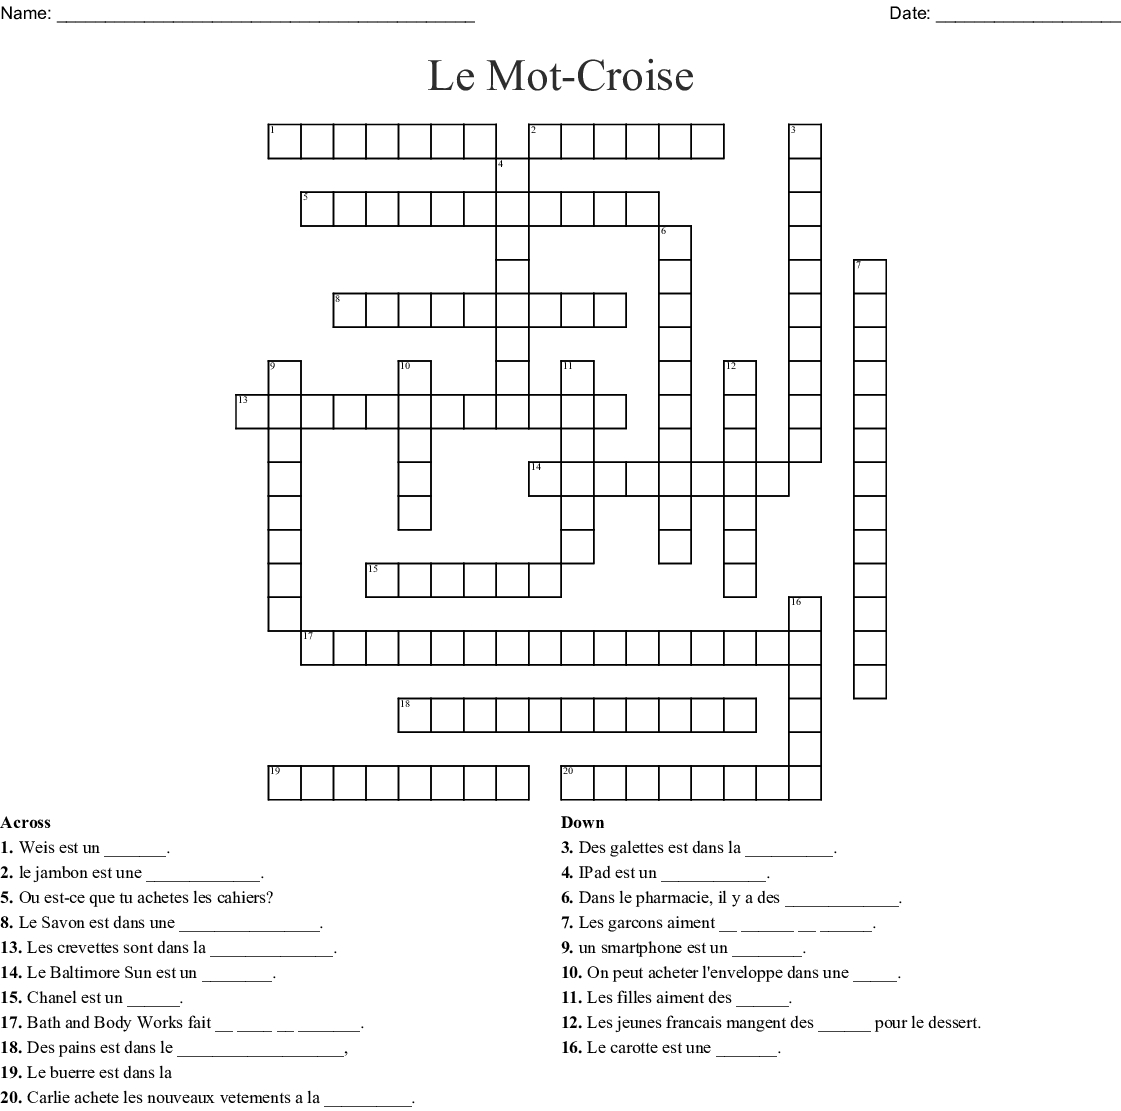 Le Mot-Croise Crossword - Wordmint à Un Mot Croisé 